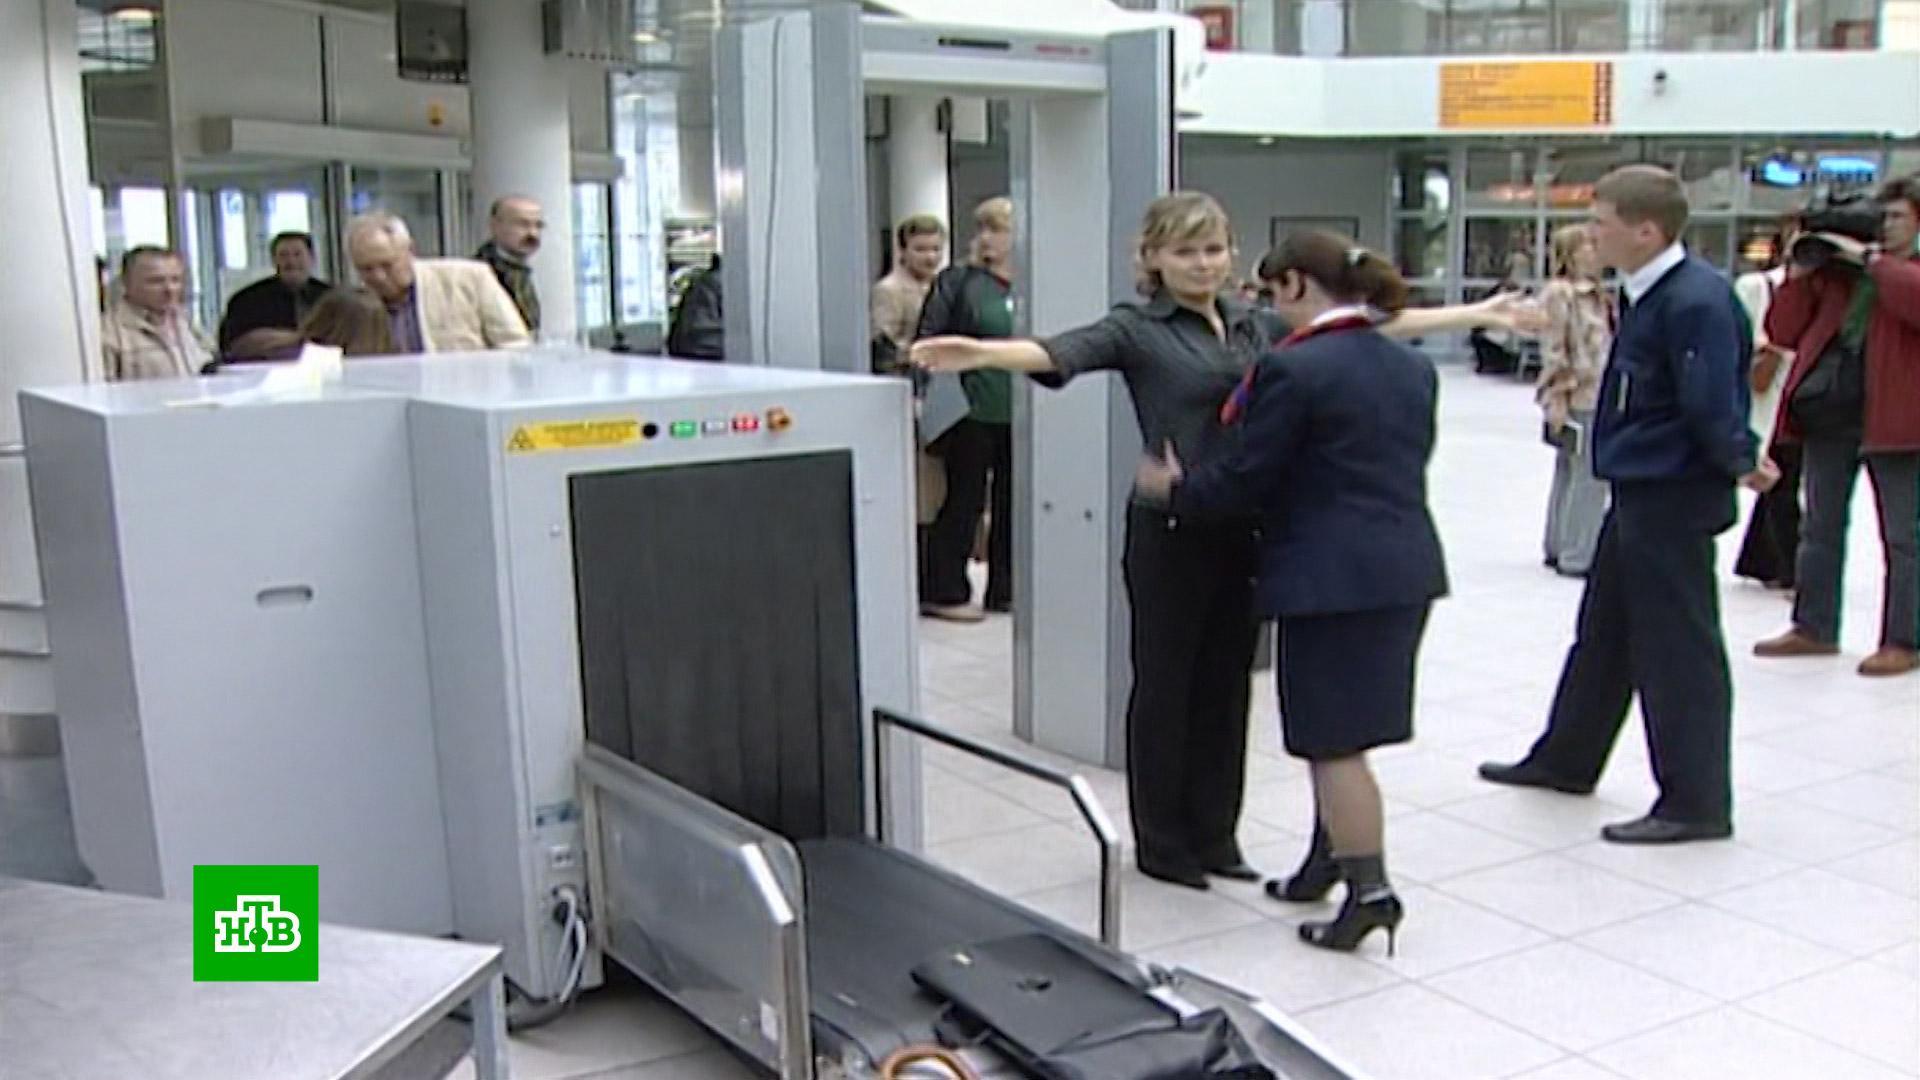 СМИ: аэропорты просят продлить срок эксплуатации импортной техники для досмотра